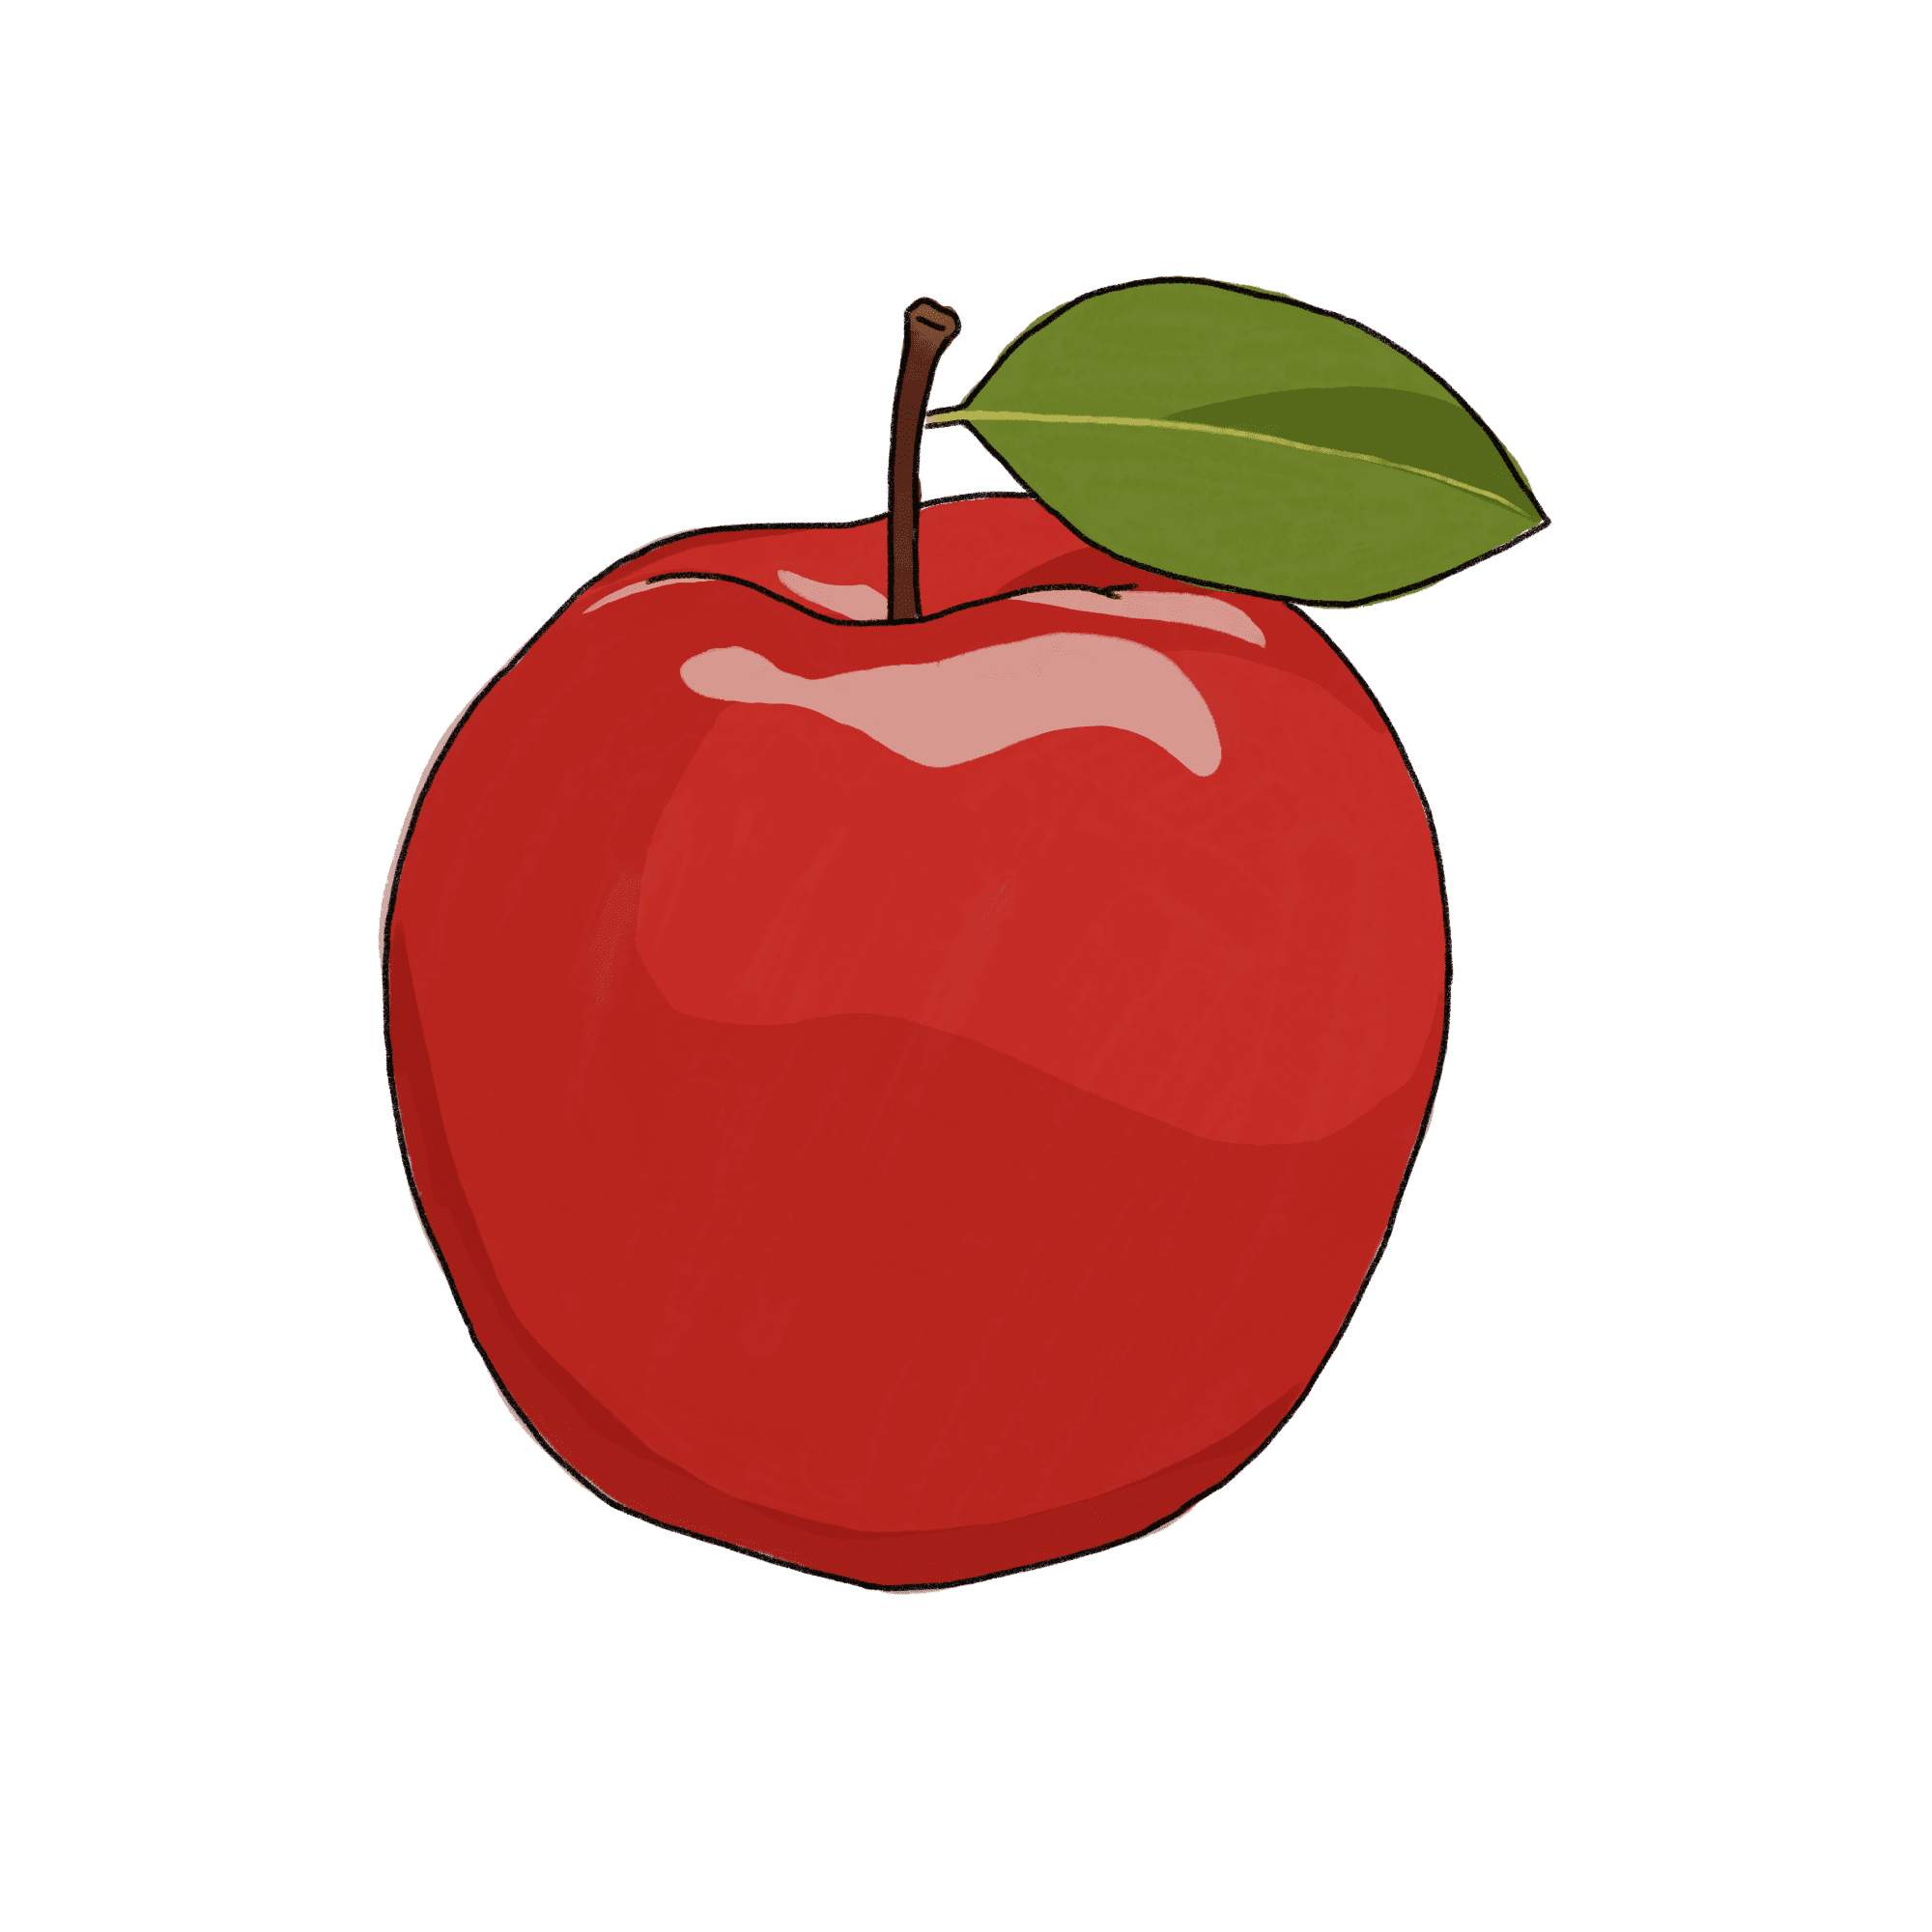 りんごのイラスト 02 フリー素材 Greenstock40